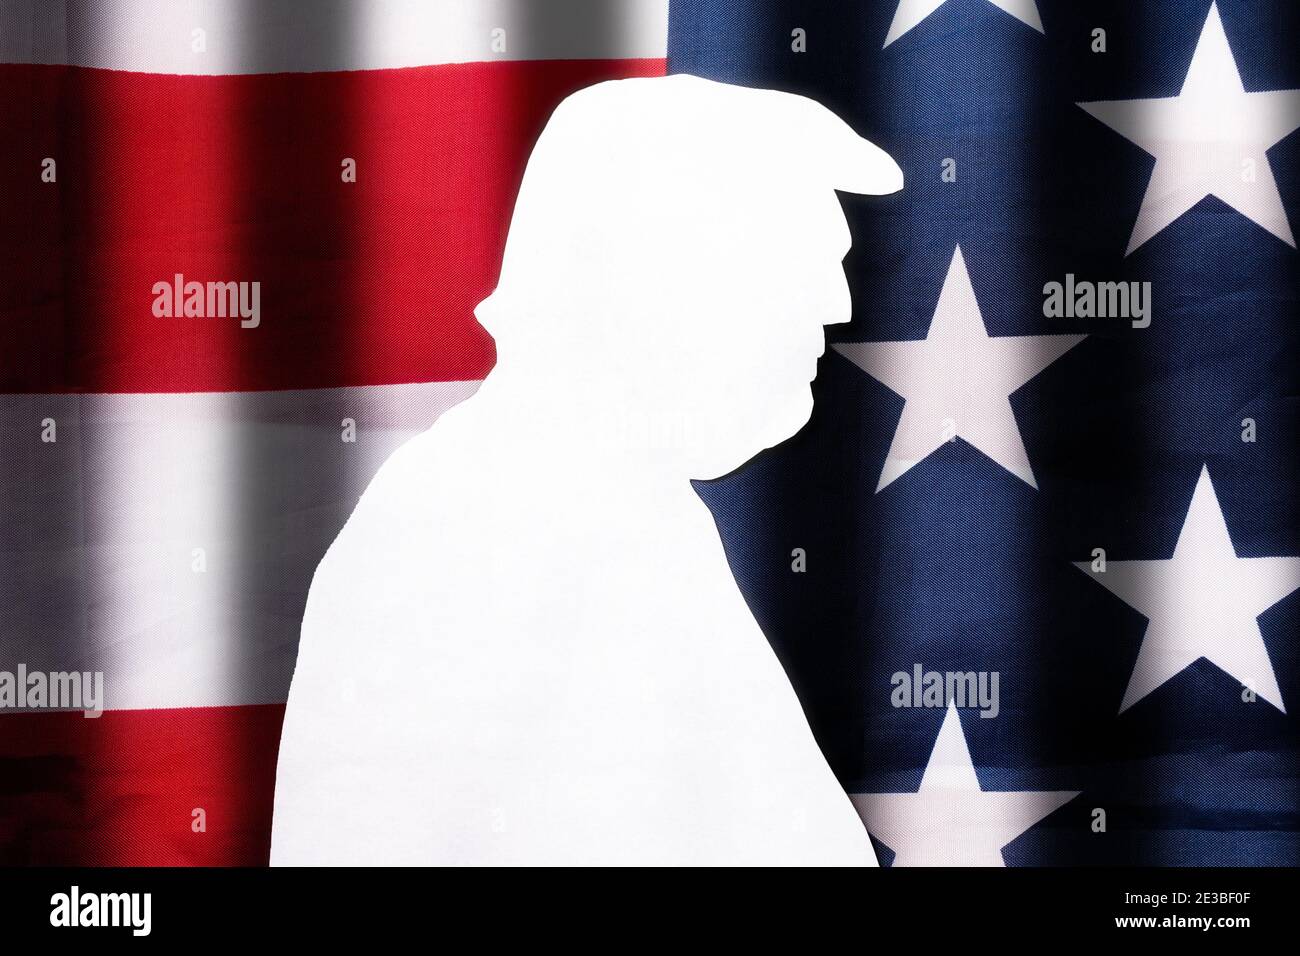 Taglio di carta bianca silhouette dell'ex presidente degli Stati Uniti sullo sfondo della bandiera americana. Disposizione piatta. La bandiera ha strisce scure repre Foto Stock